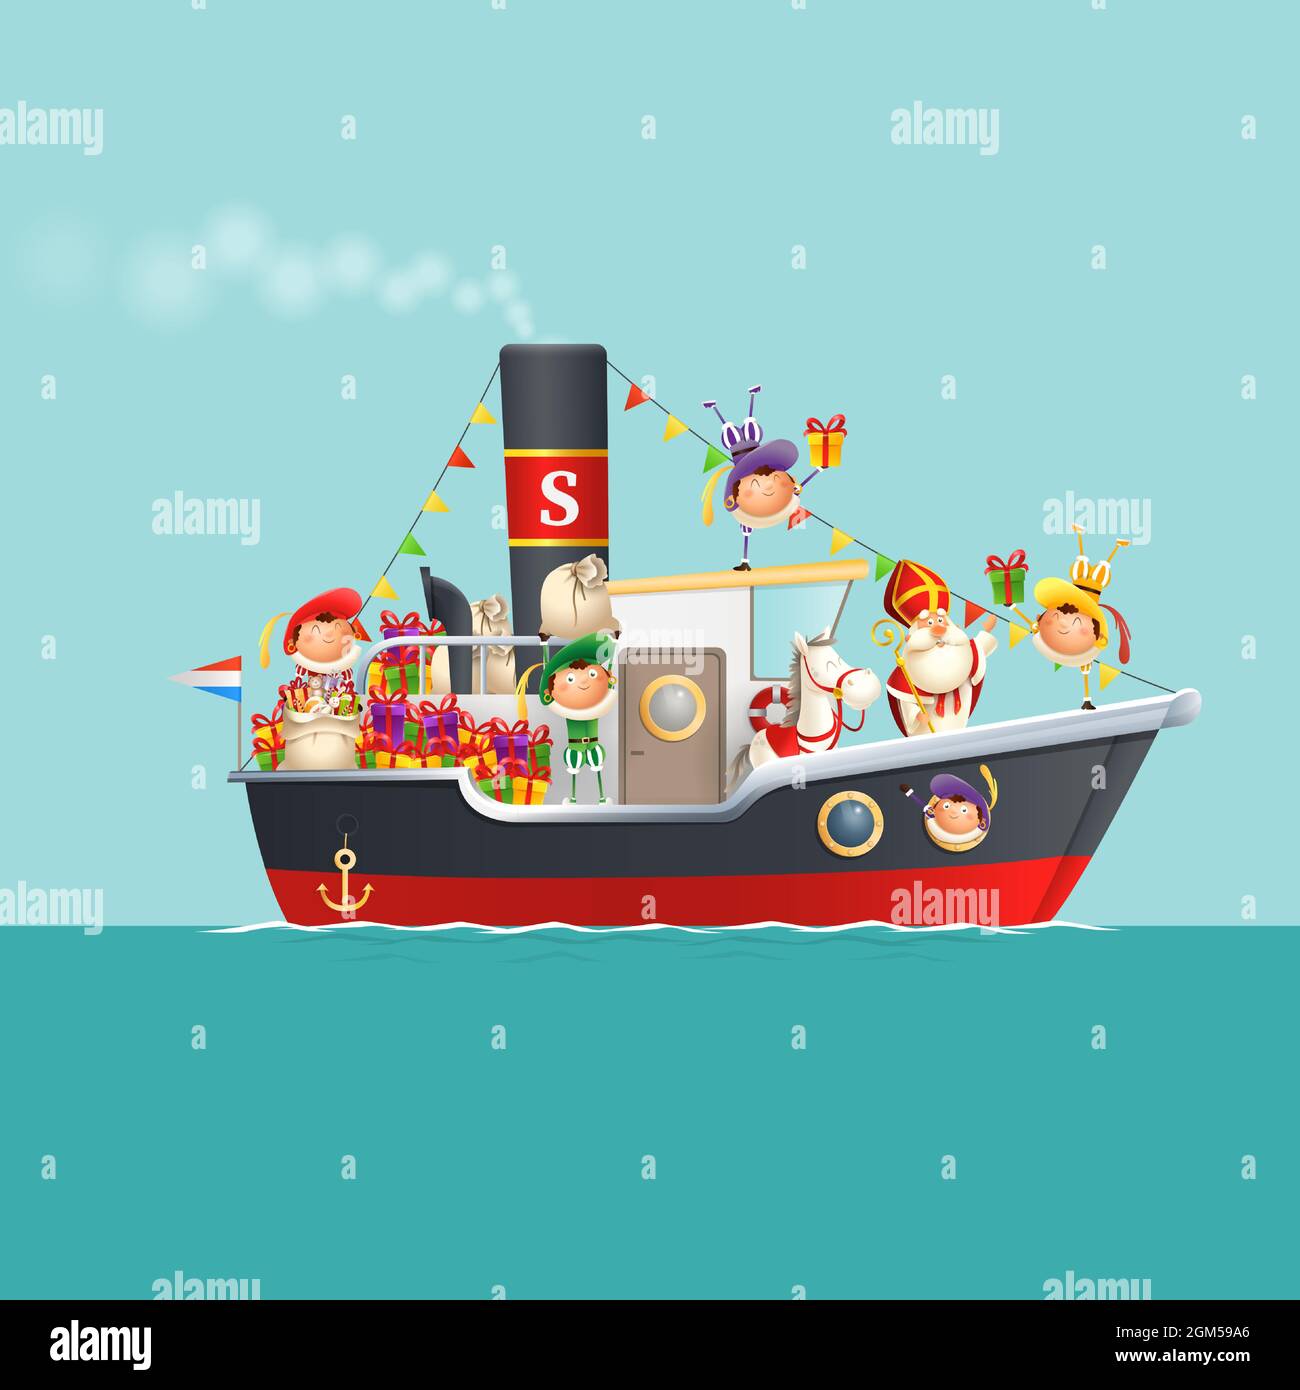 Sinterklaas sta arrivando in città con i bambini in barca a vapore - festa Sinterklaas giorno - illustrazione vettoriale Illustrazione Vettoriale